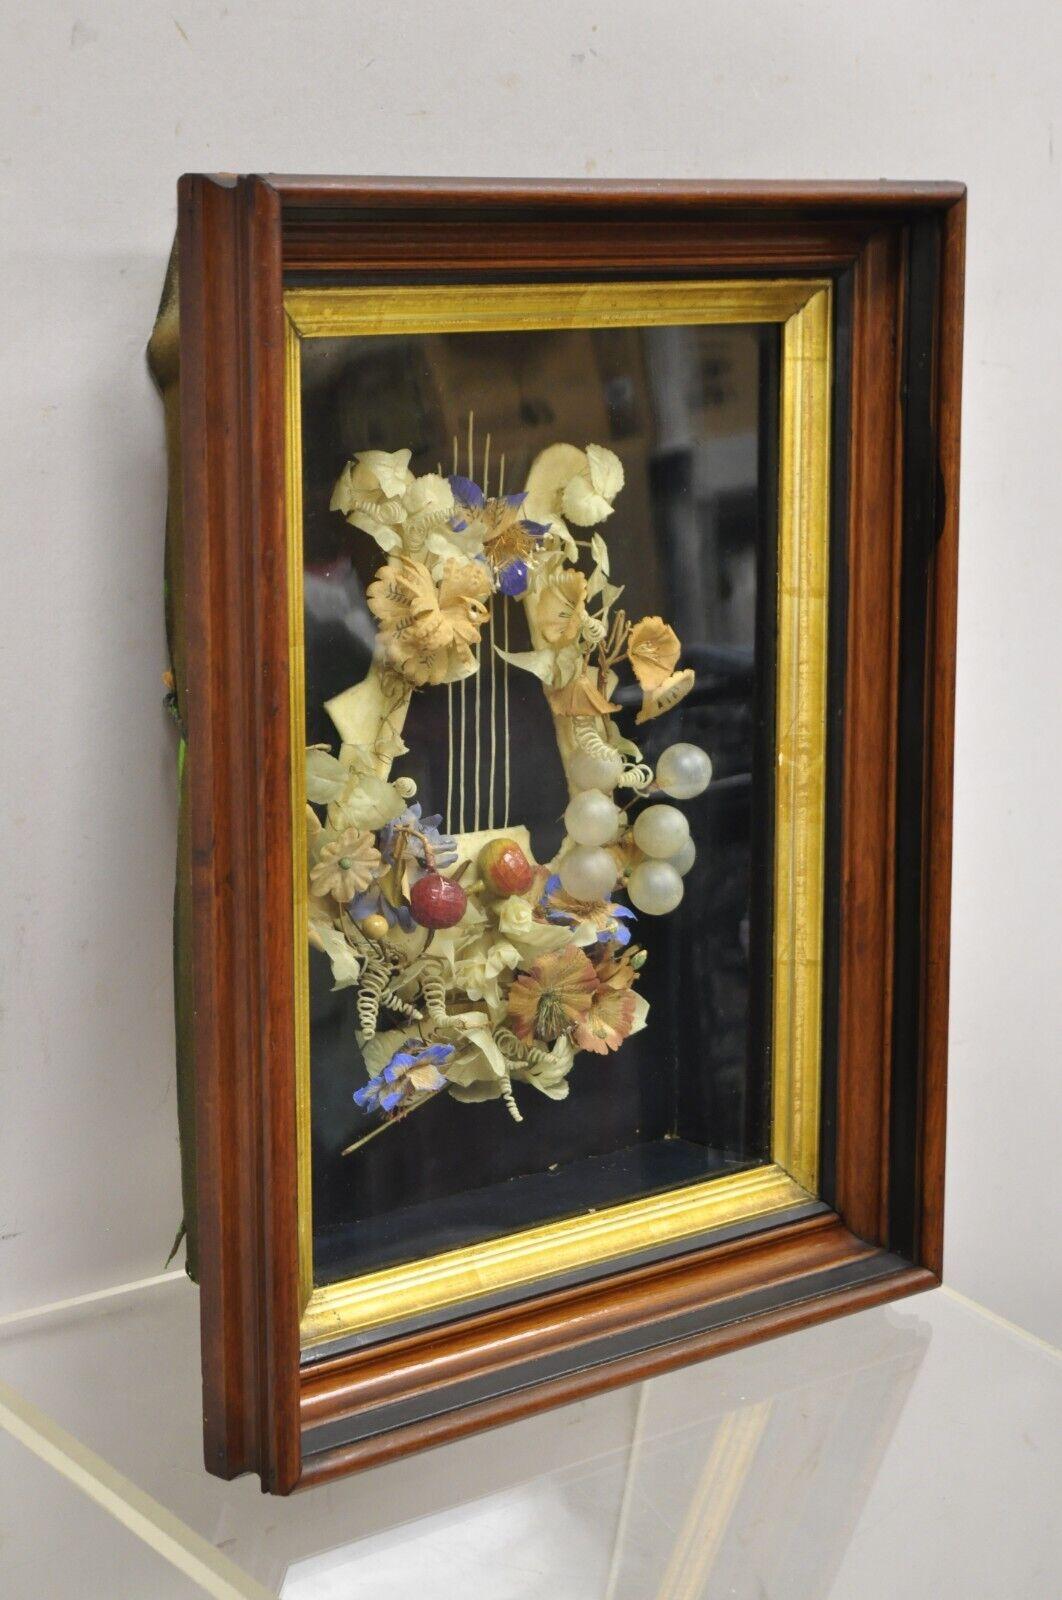 Cadre ancien victorien en acajou avec couronne de deuil en forme de harpe. L'objet présente un motif de harpe, une couronne de fleurs, un cadre en acajou profond, une bordure dorée, un très bel objet ancien. Circa  19ème siècle.
Dimensions : 17,5